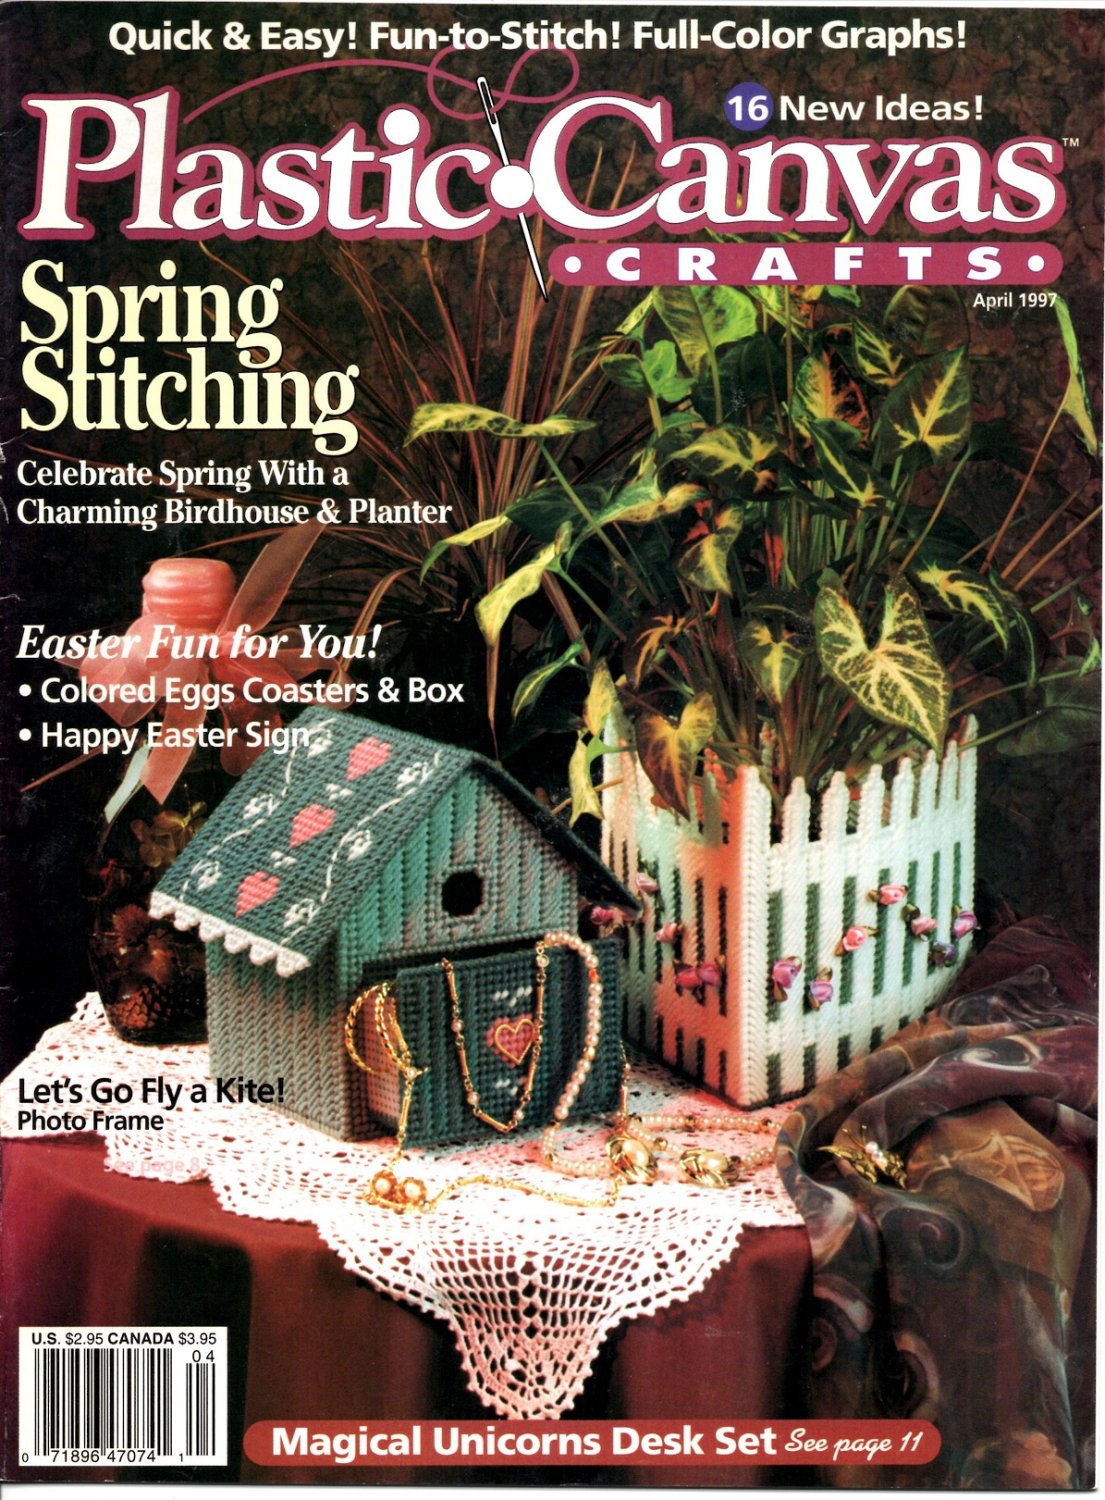 Plastic Canvas Crafts Magazine April 1997 Vol 5 No 2